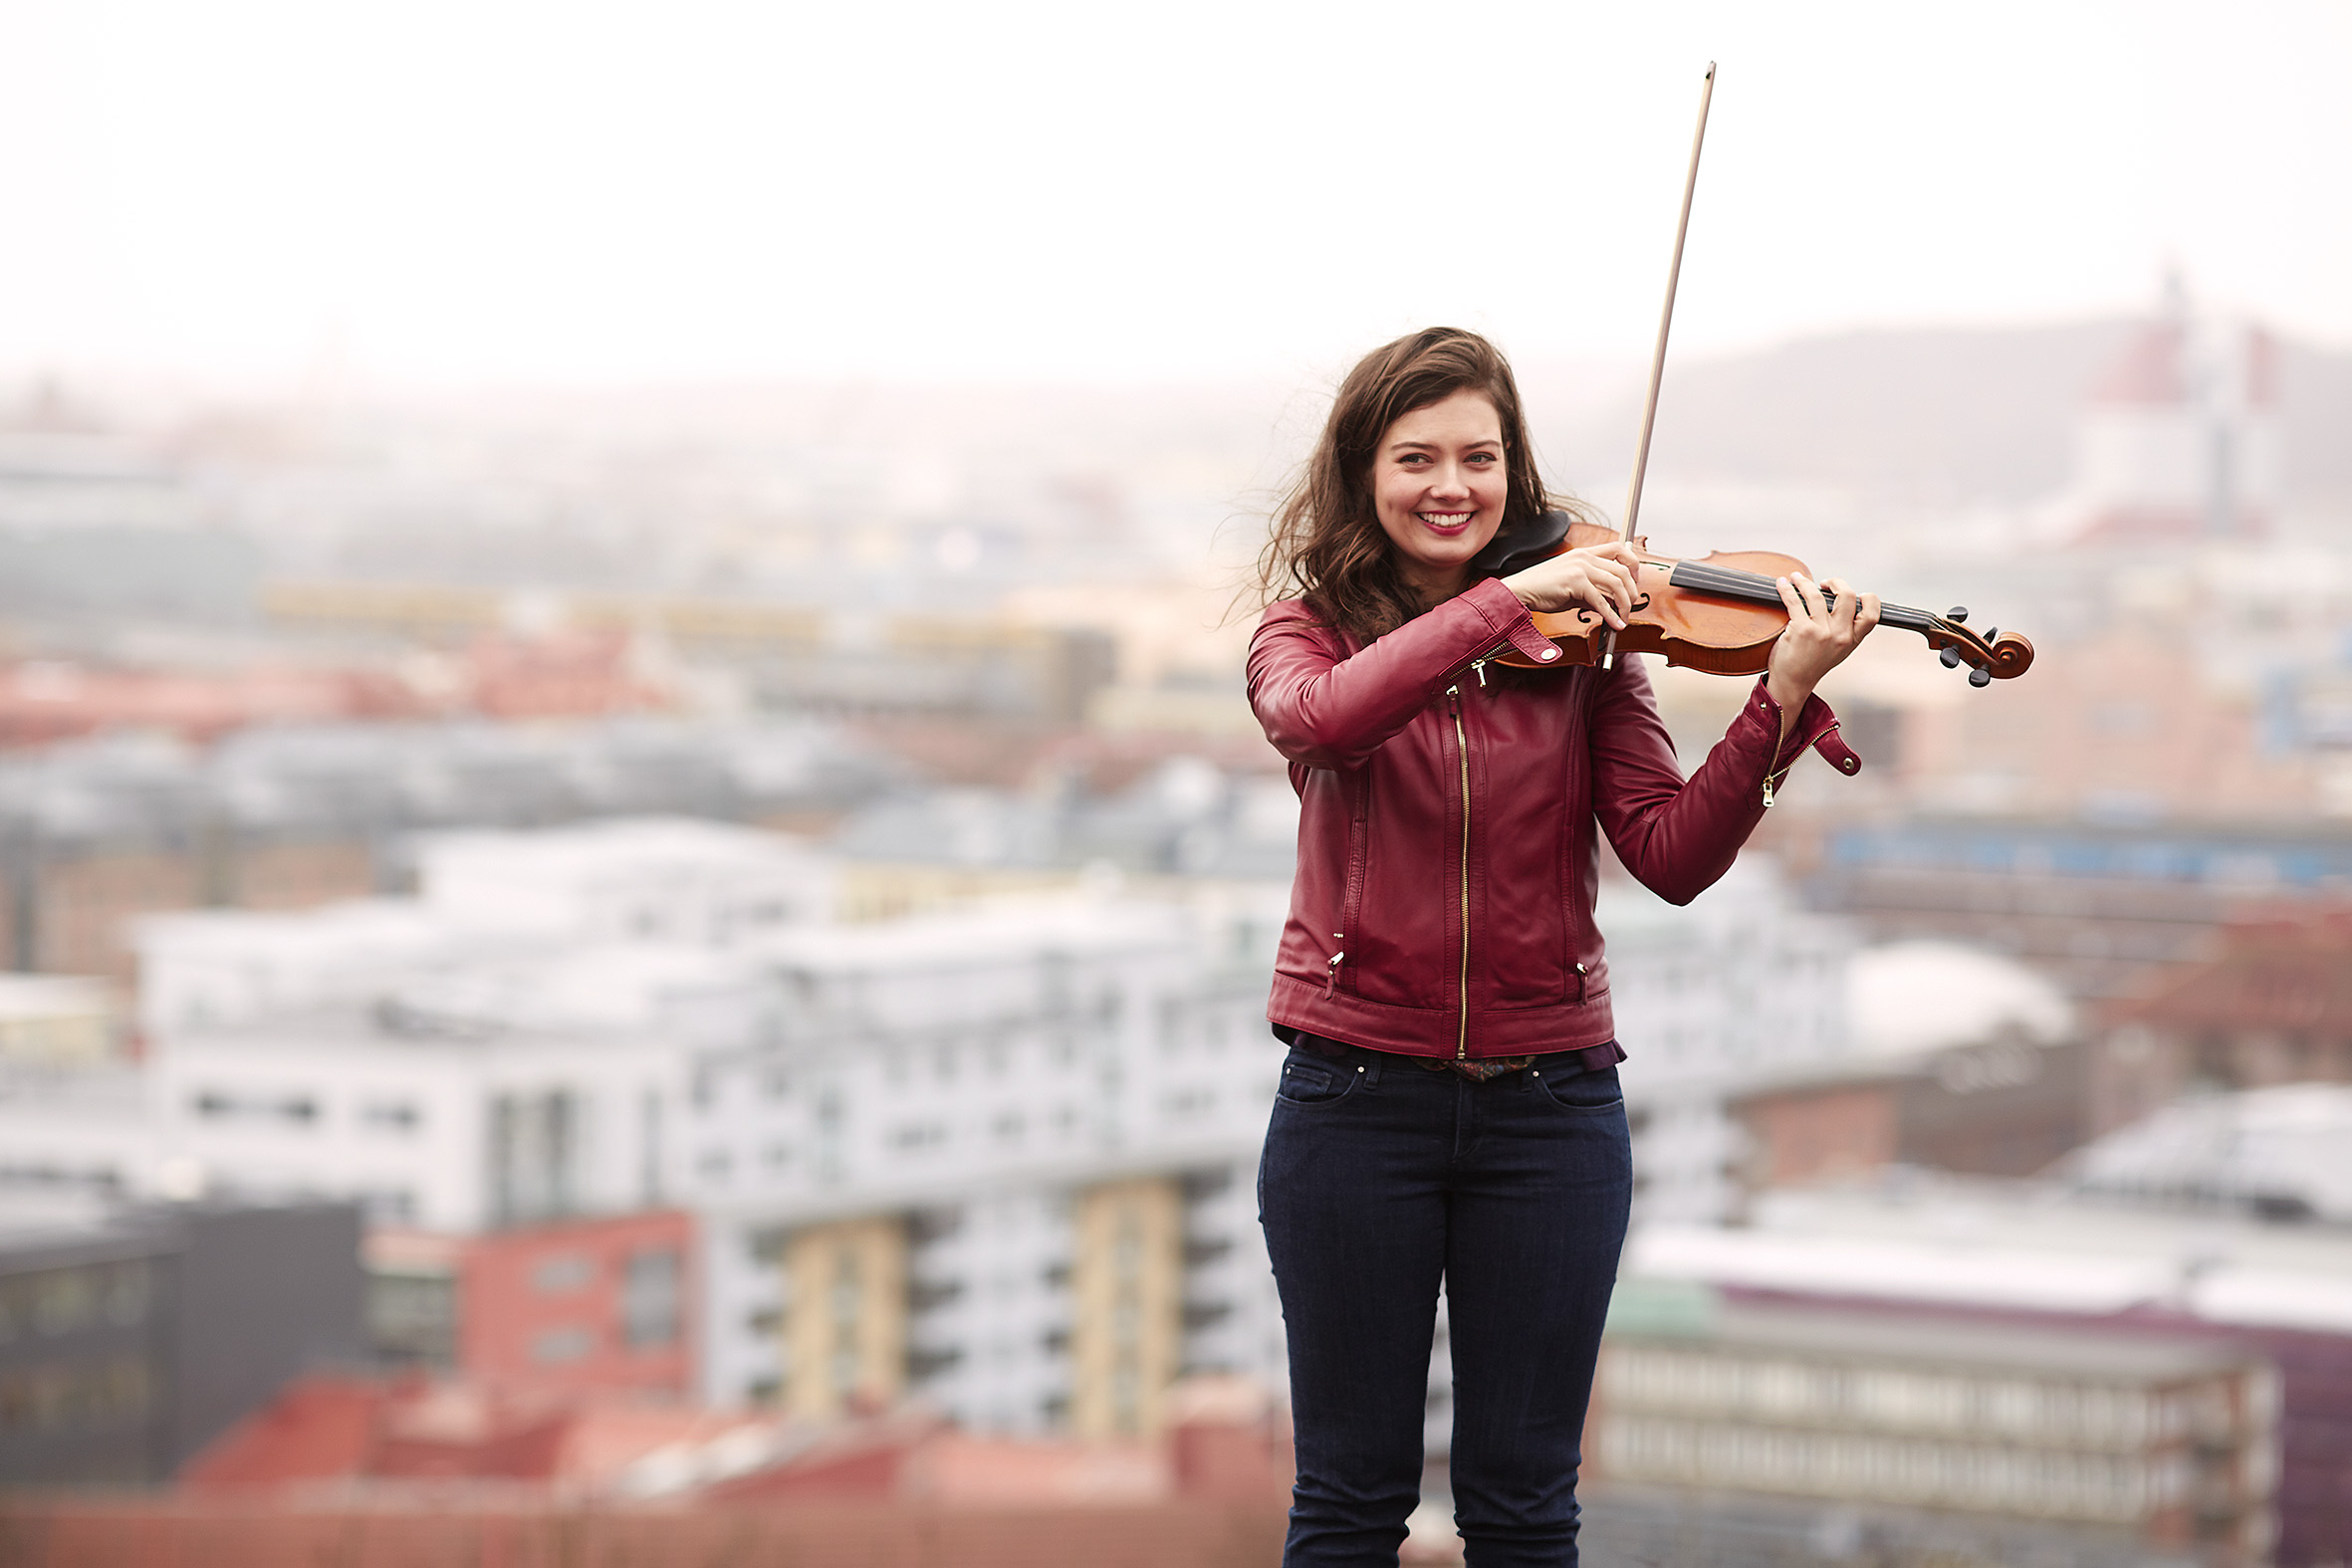 Justyna Jara från Göteborgs Symfoniker spelar violin på hustak med utsikt över hus i bakgrunden.